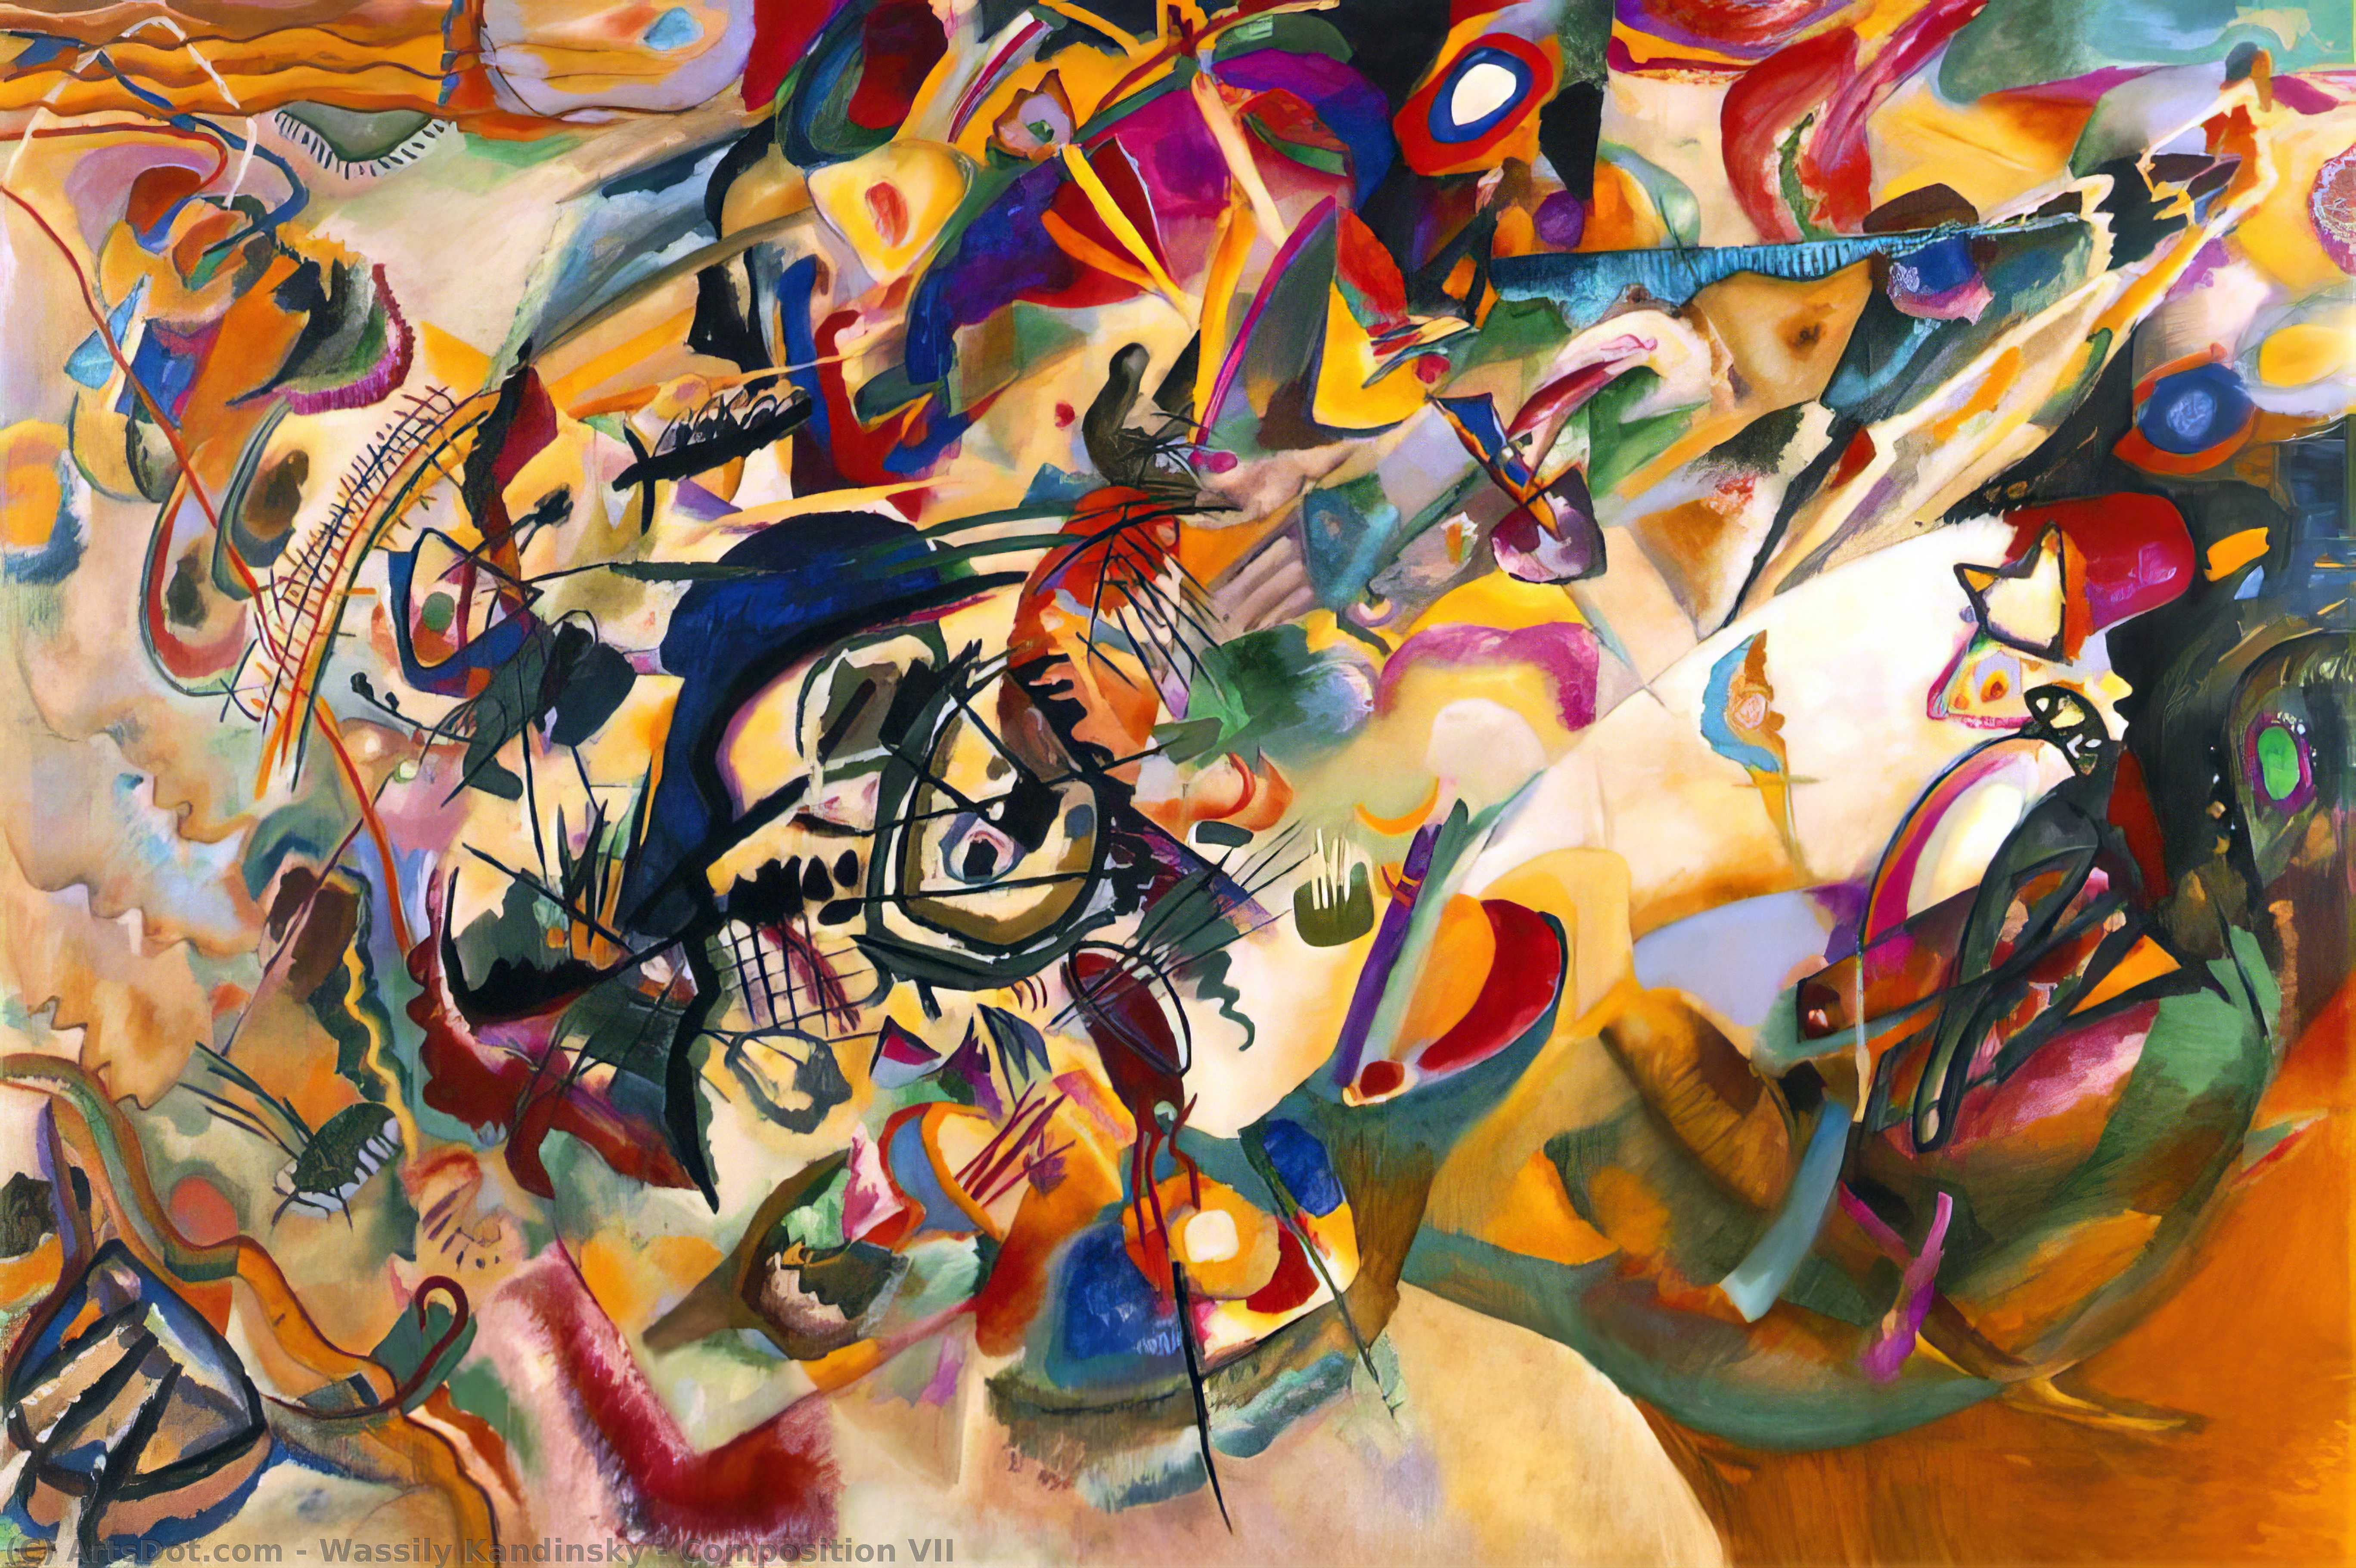 Compre Museu De Reproduções De Arte Composição VII, 1913 por Wassily Kandinsky (1866-1944, Russia) | ArtsDot.com